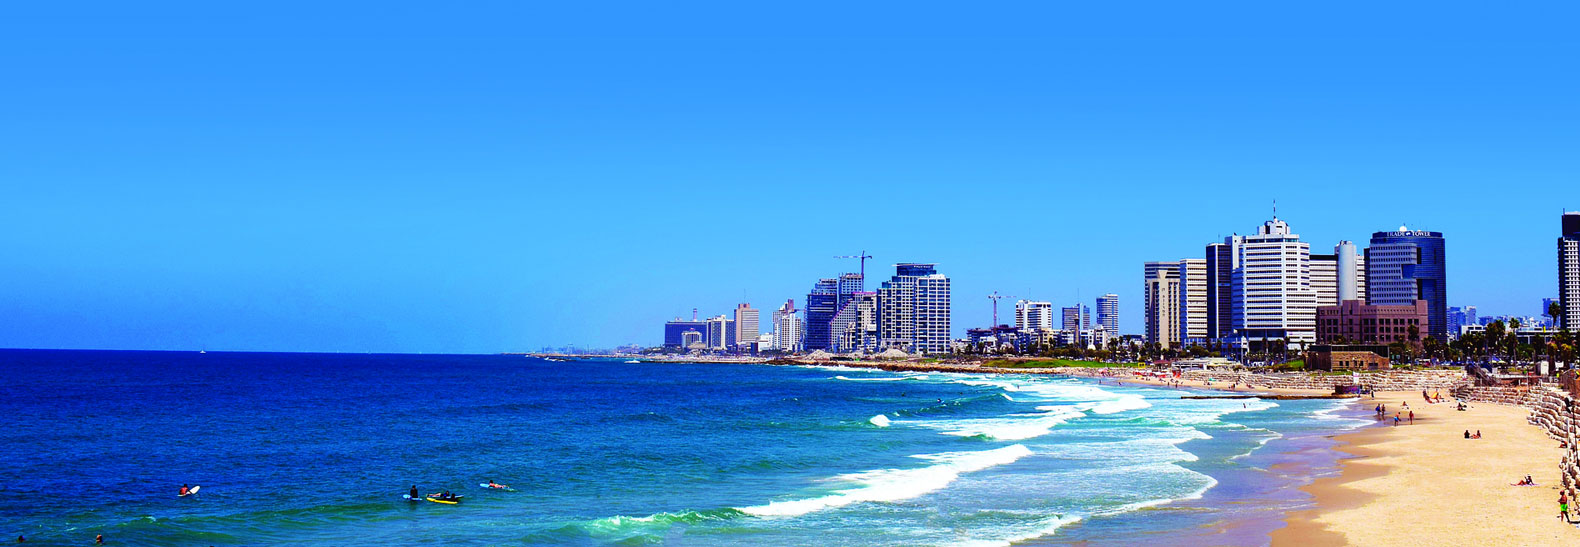 La spiaggia di Tel Aviv